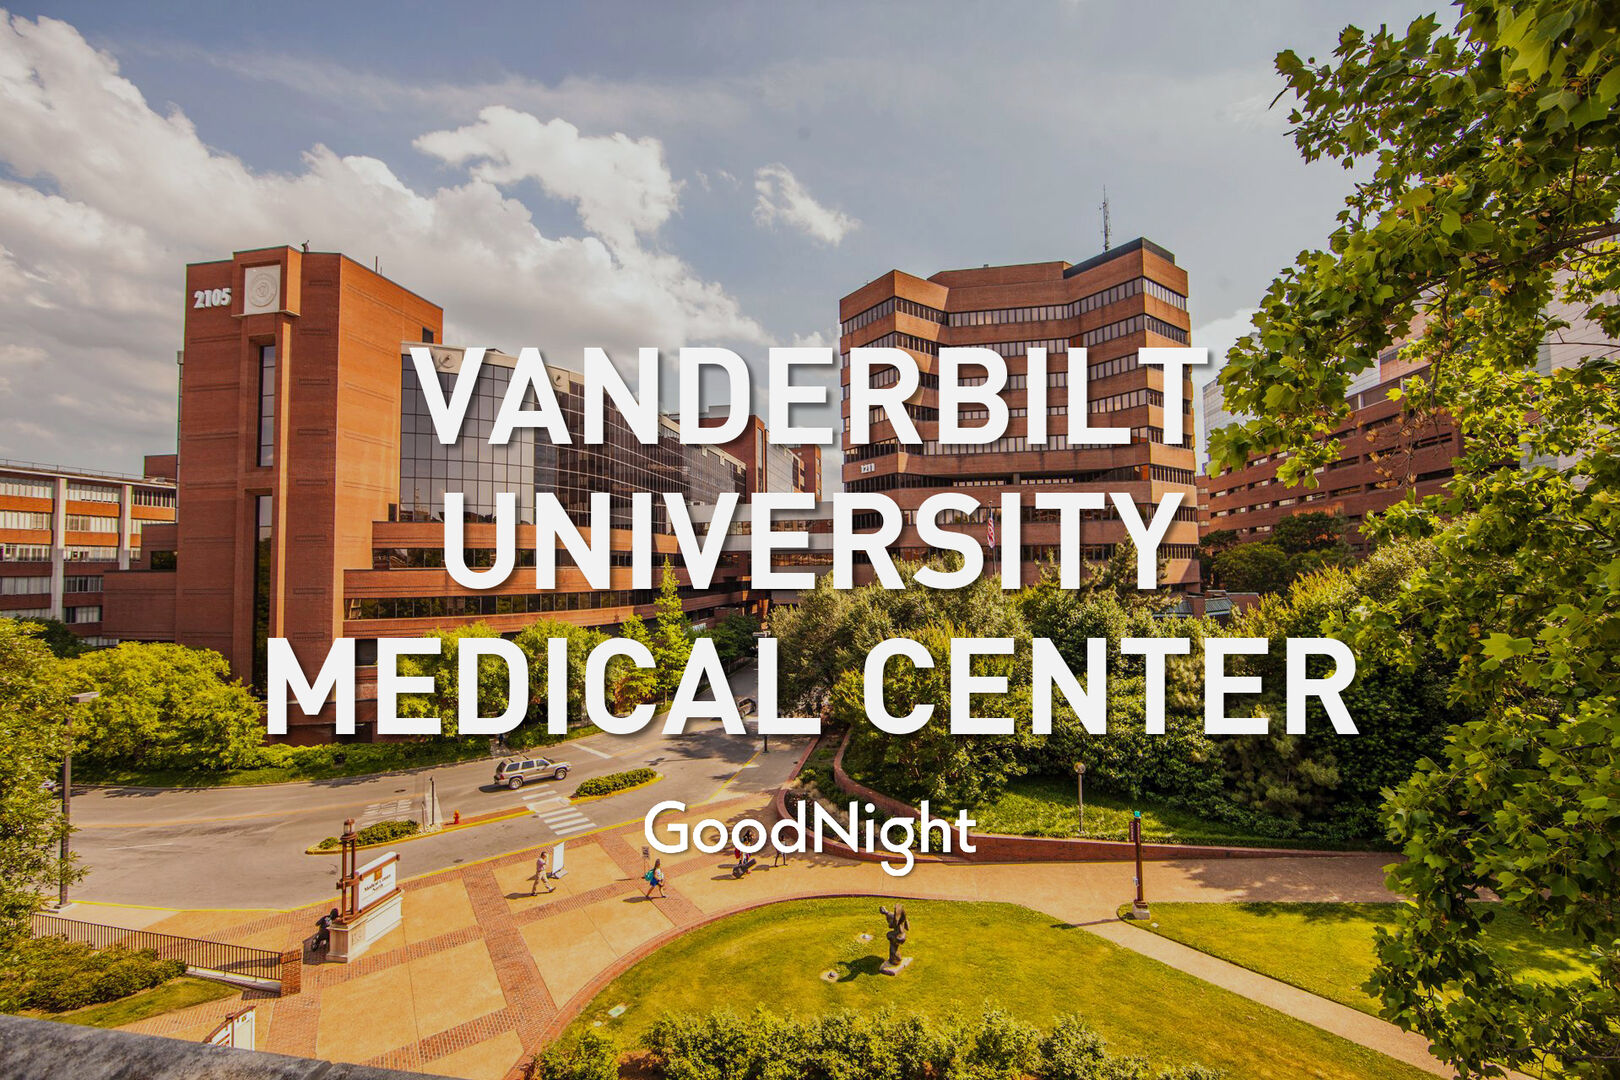 12 mins: Vanderbilt University Medical Center